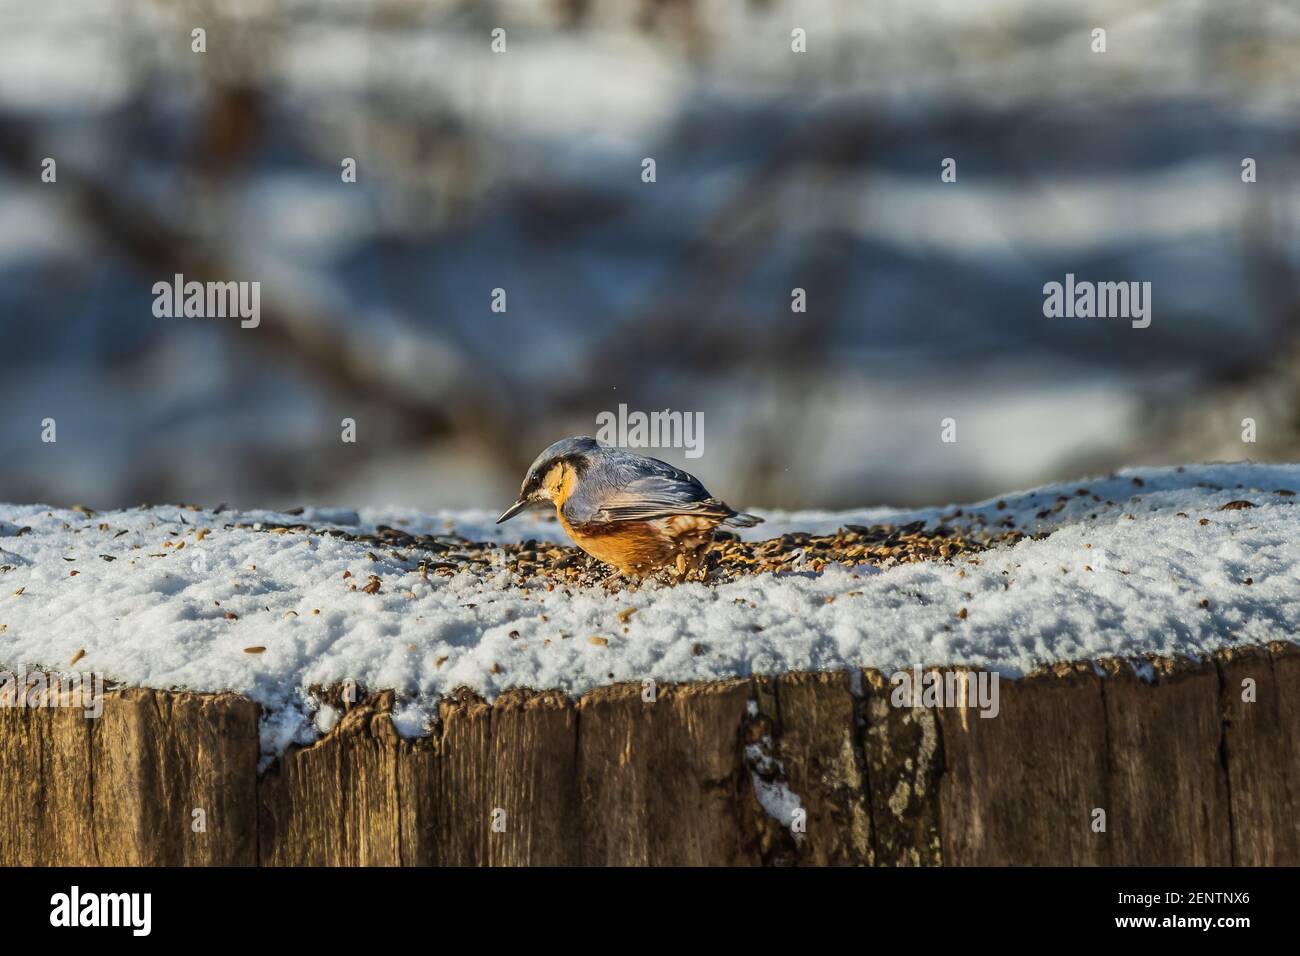 Vogel im Winter auf Schnee. Ein seitl. Nuthatch mit grau-blauen und gelb-orangen Federn gräbt in Vogelsamen und Körnern auf dem schneebedeckten Baumstamm. Stockfoto